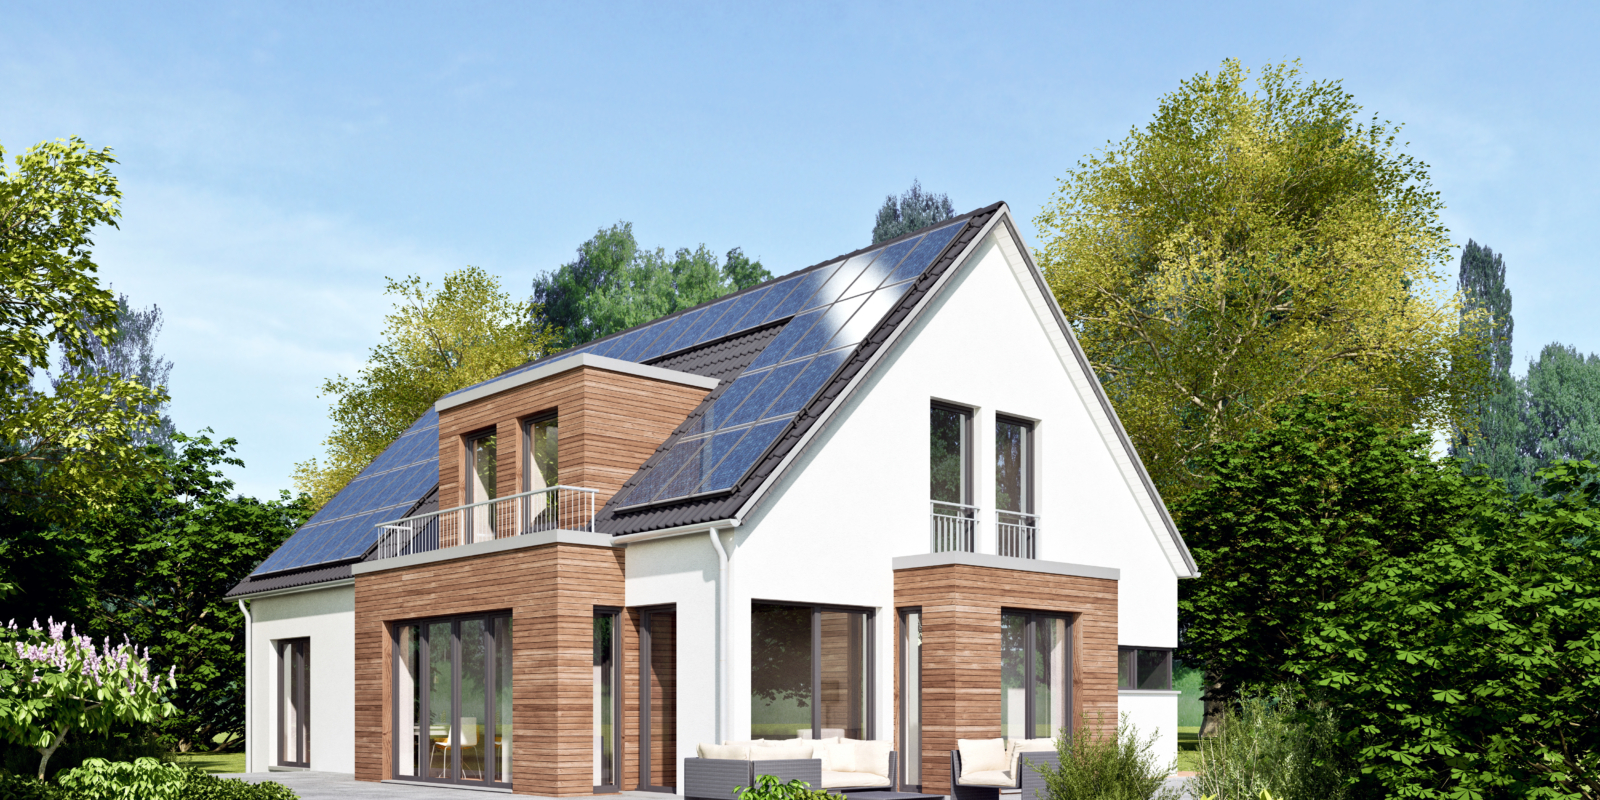 Schickes Einfamilienhaus mit Holzelementen und Solar